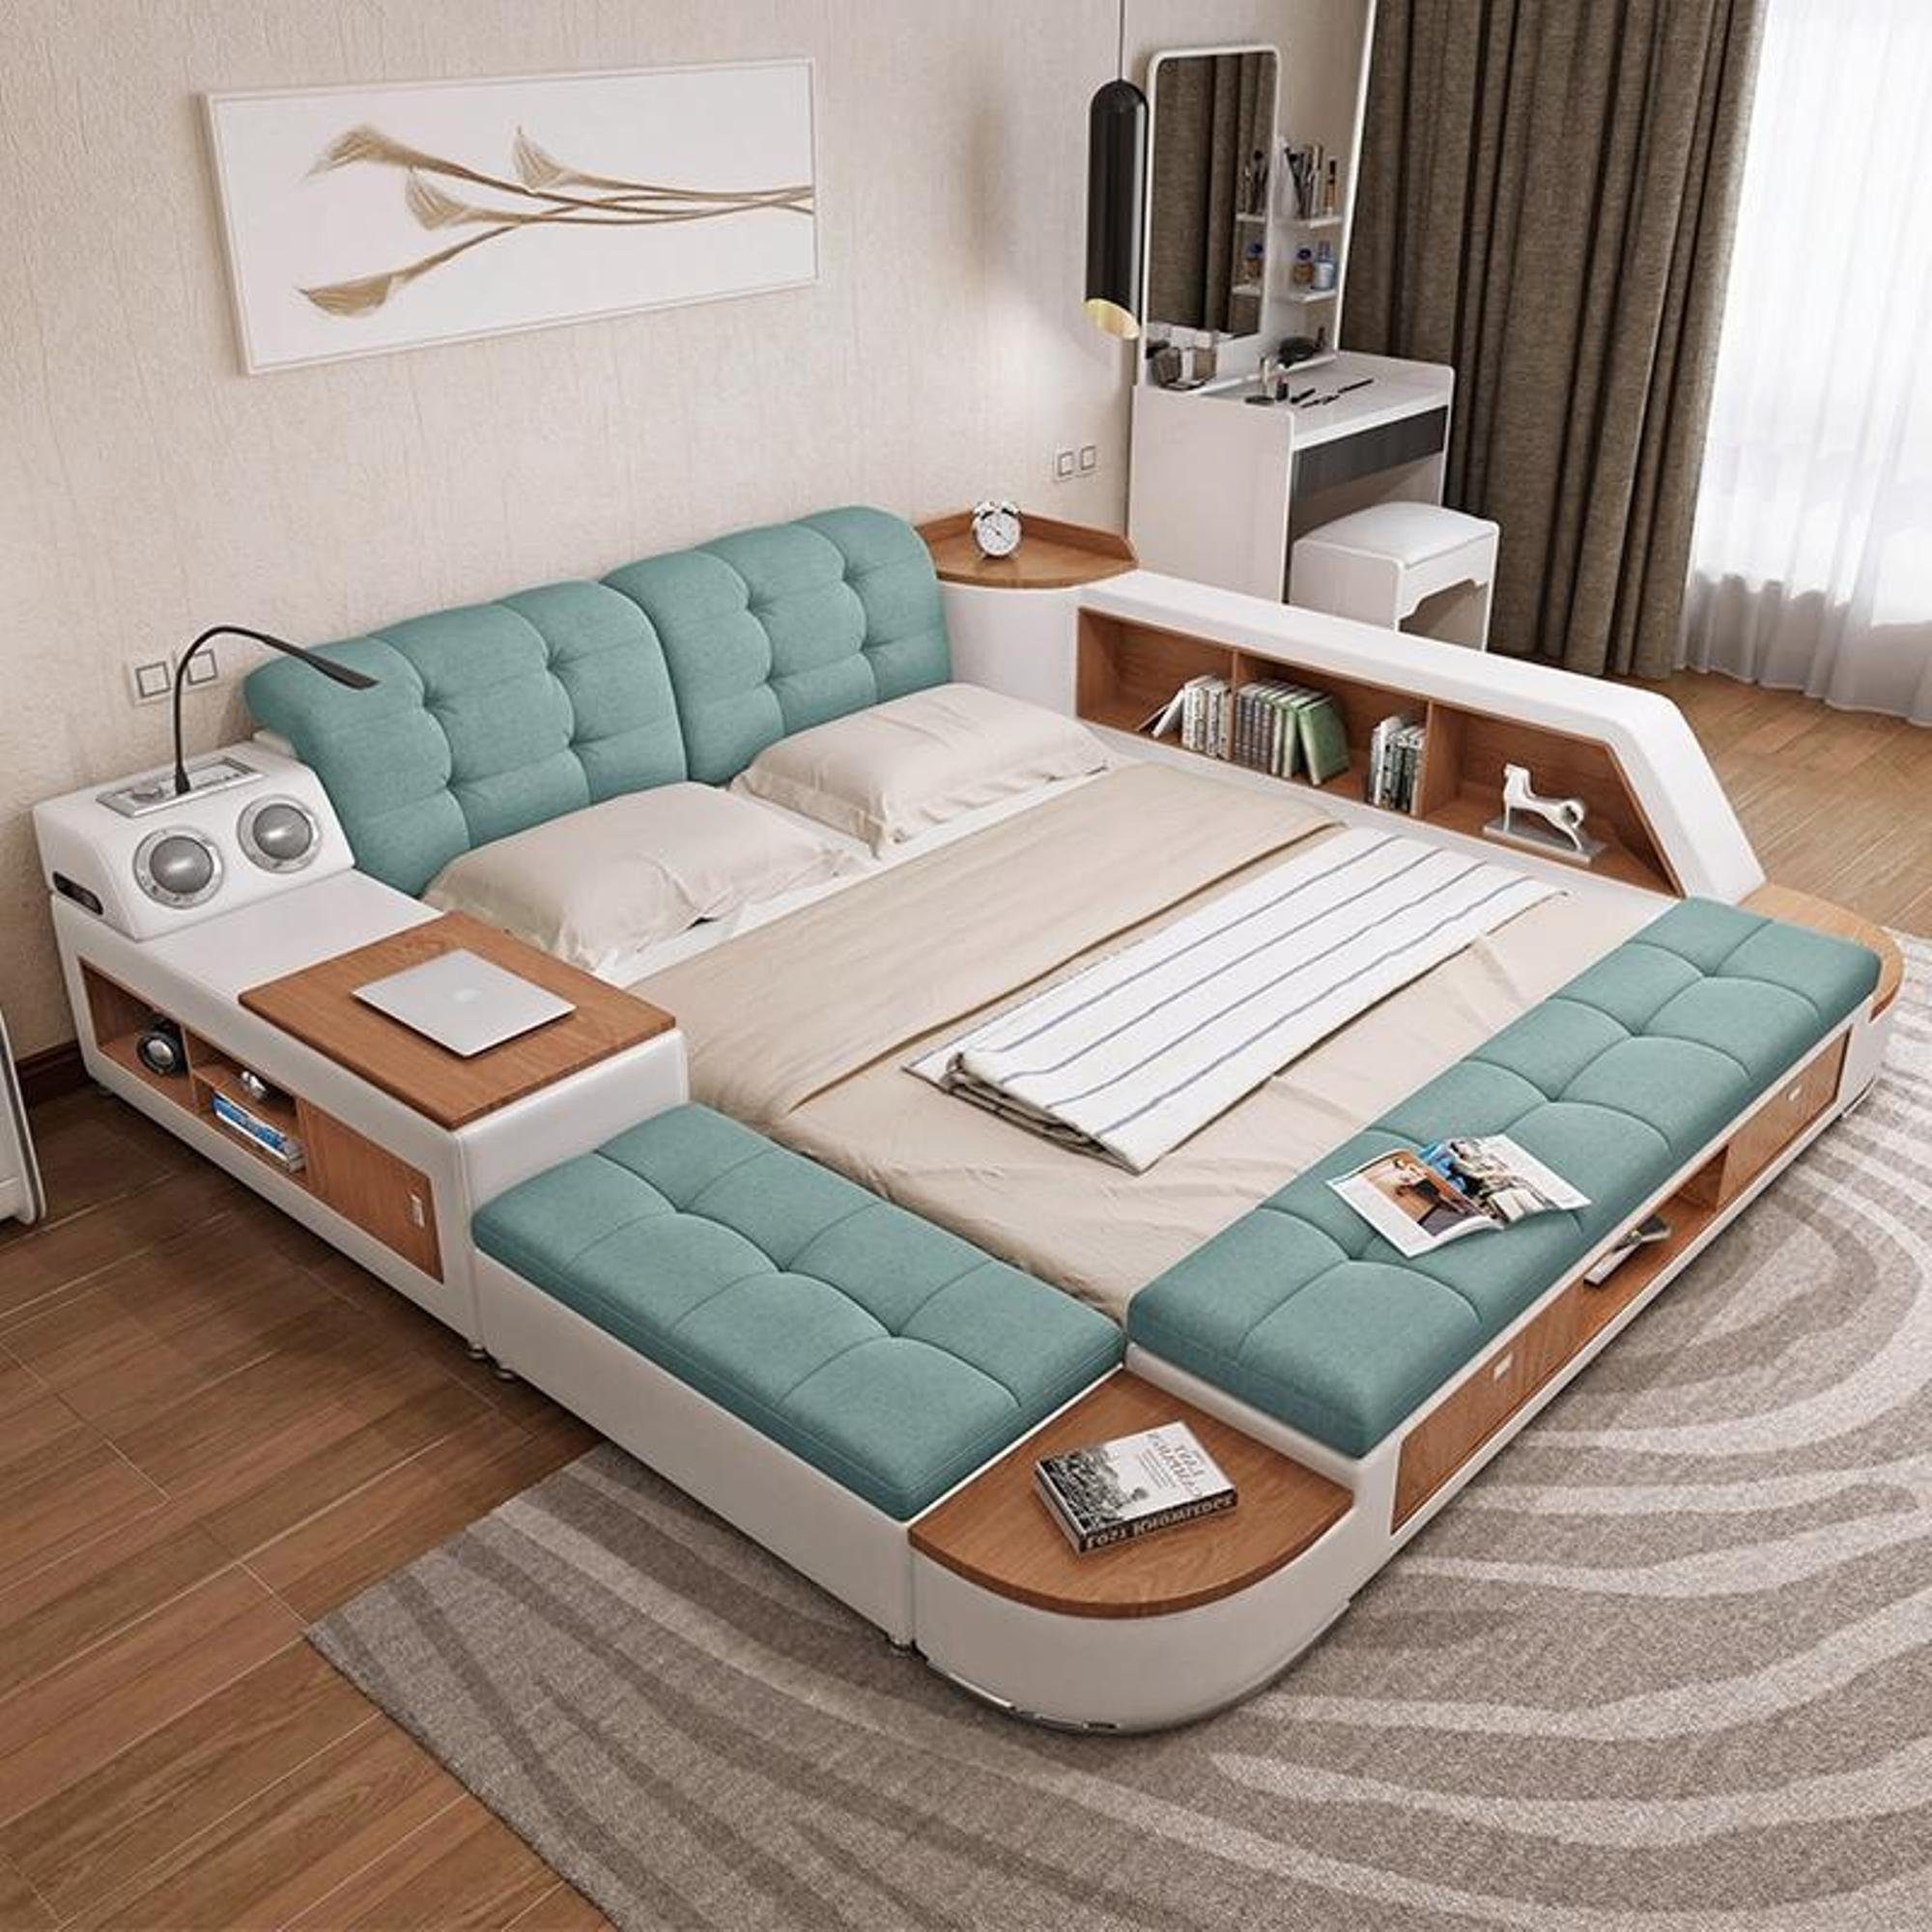 JVmoebel Bett Polster Betten Blau Moderne Neu Doppel Hotel Luxus Multifunktion